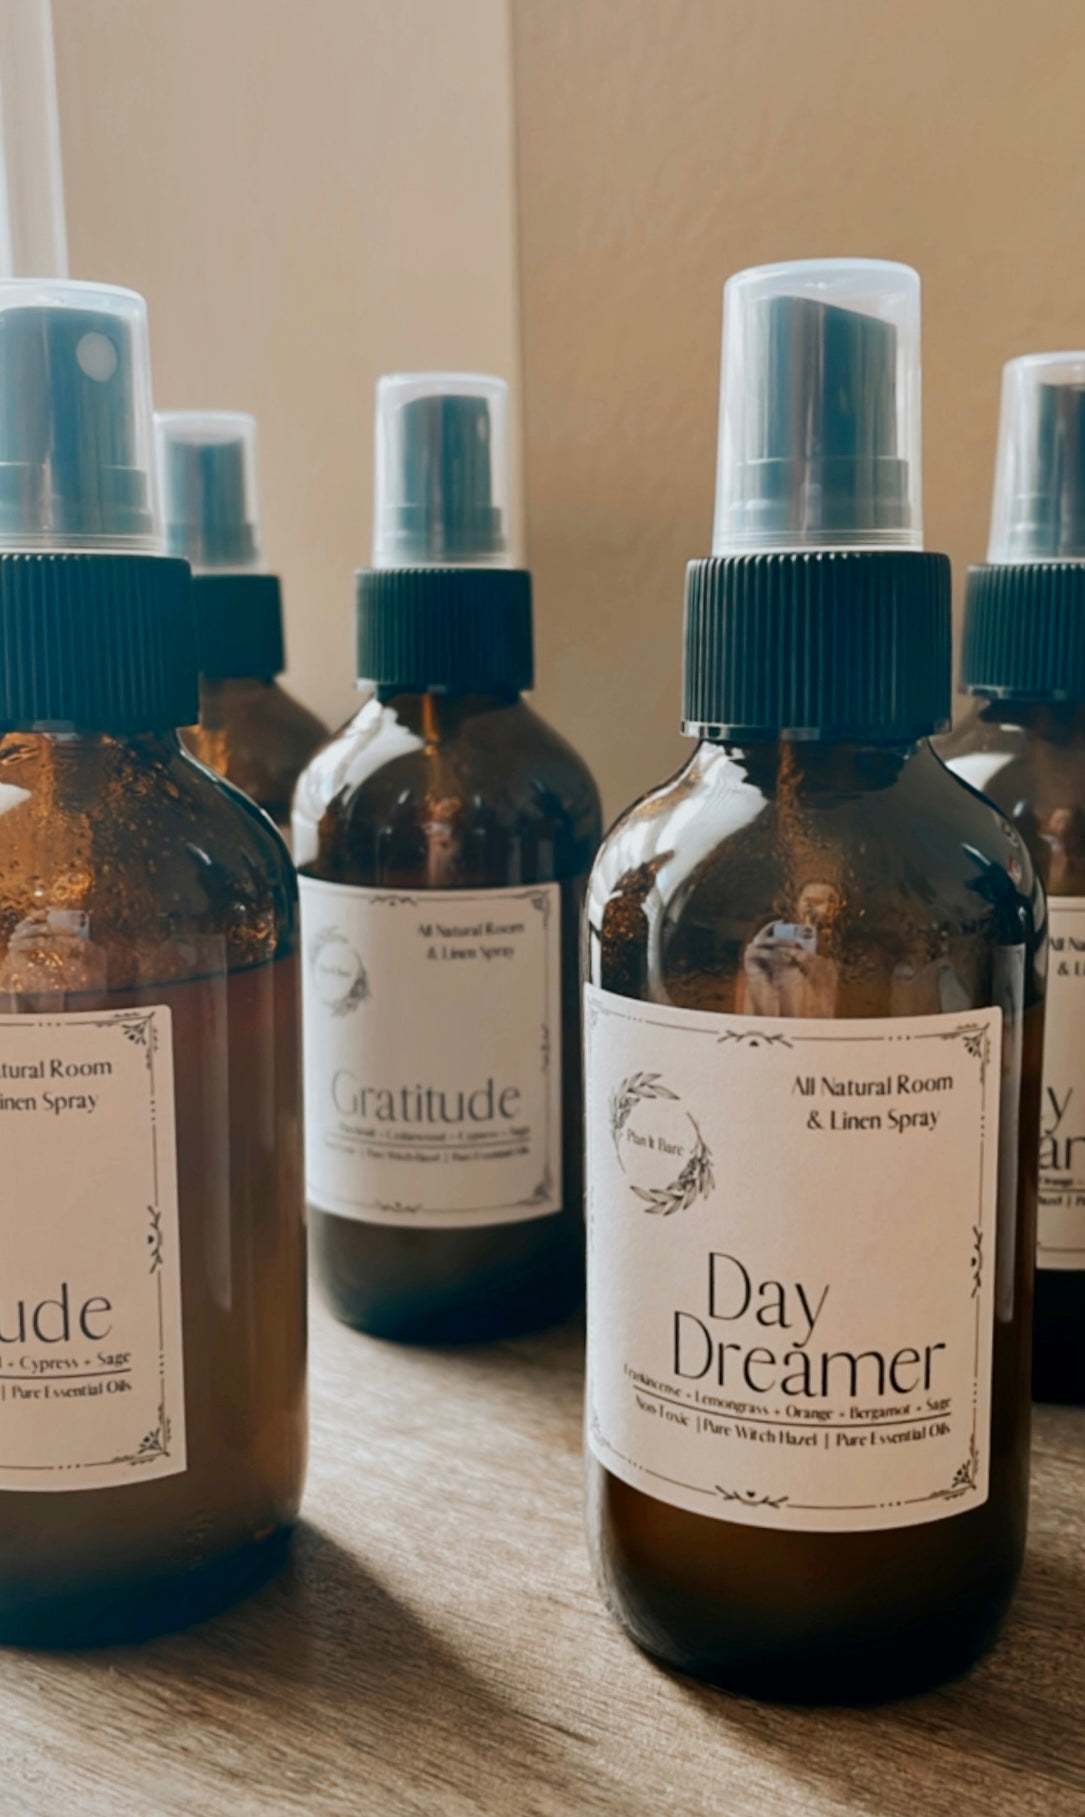 All Natural Room & Linen Spray— Daydreamer